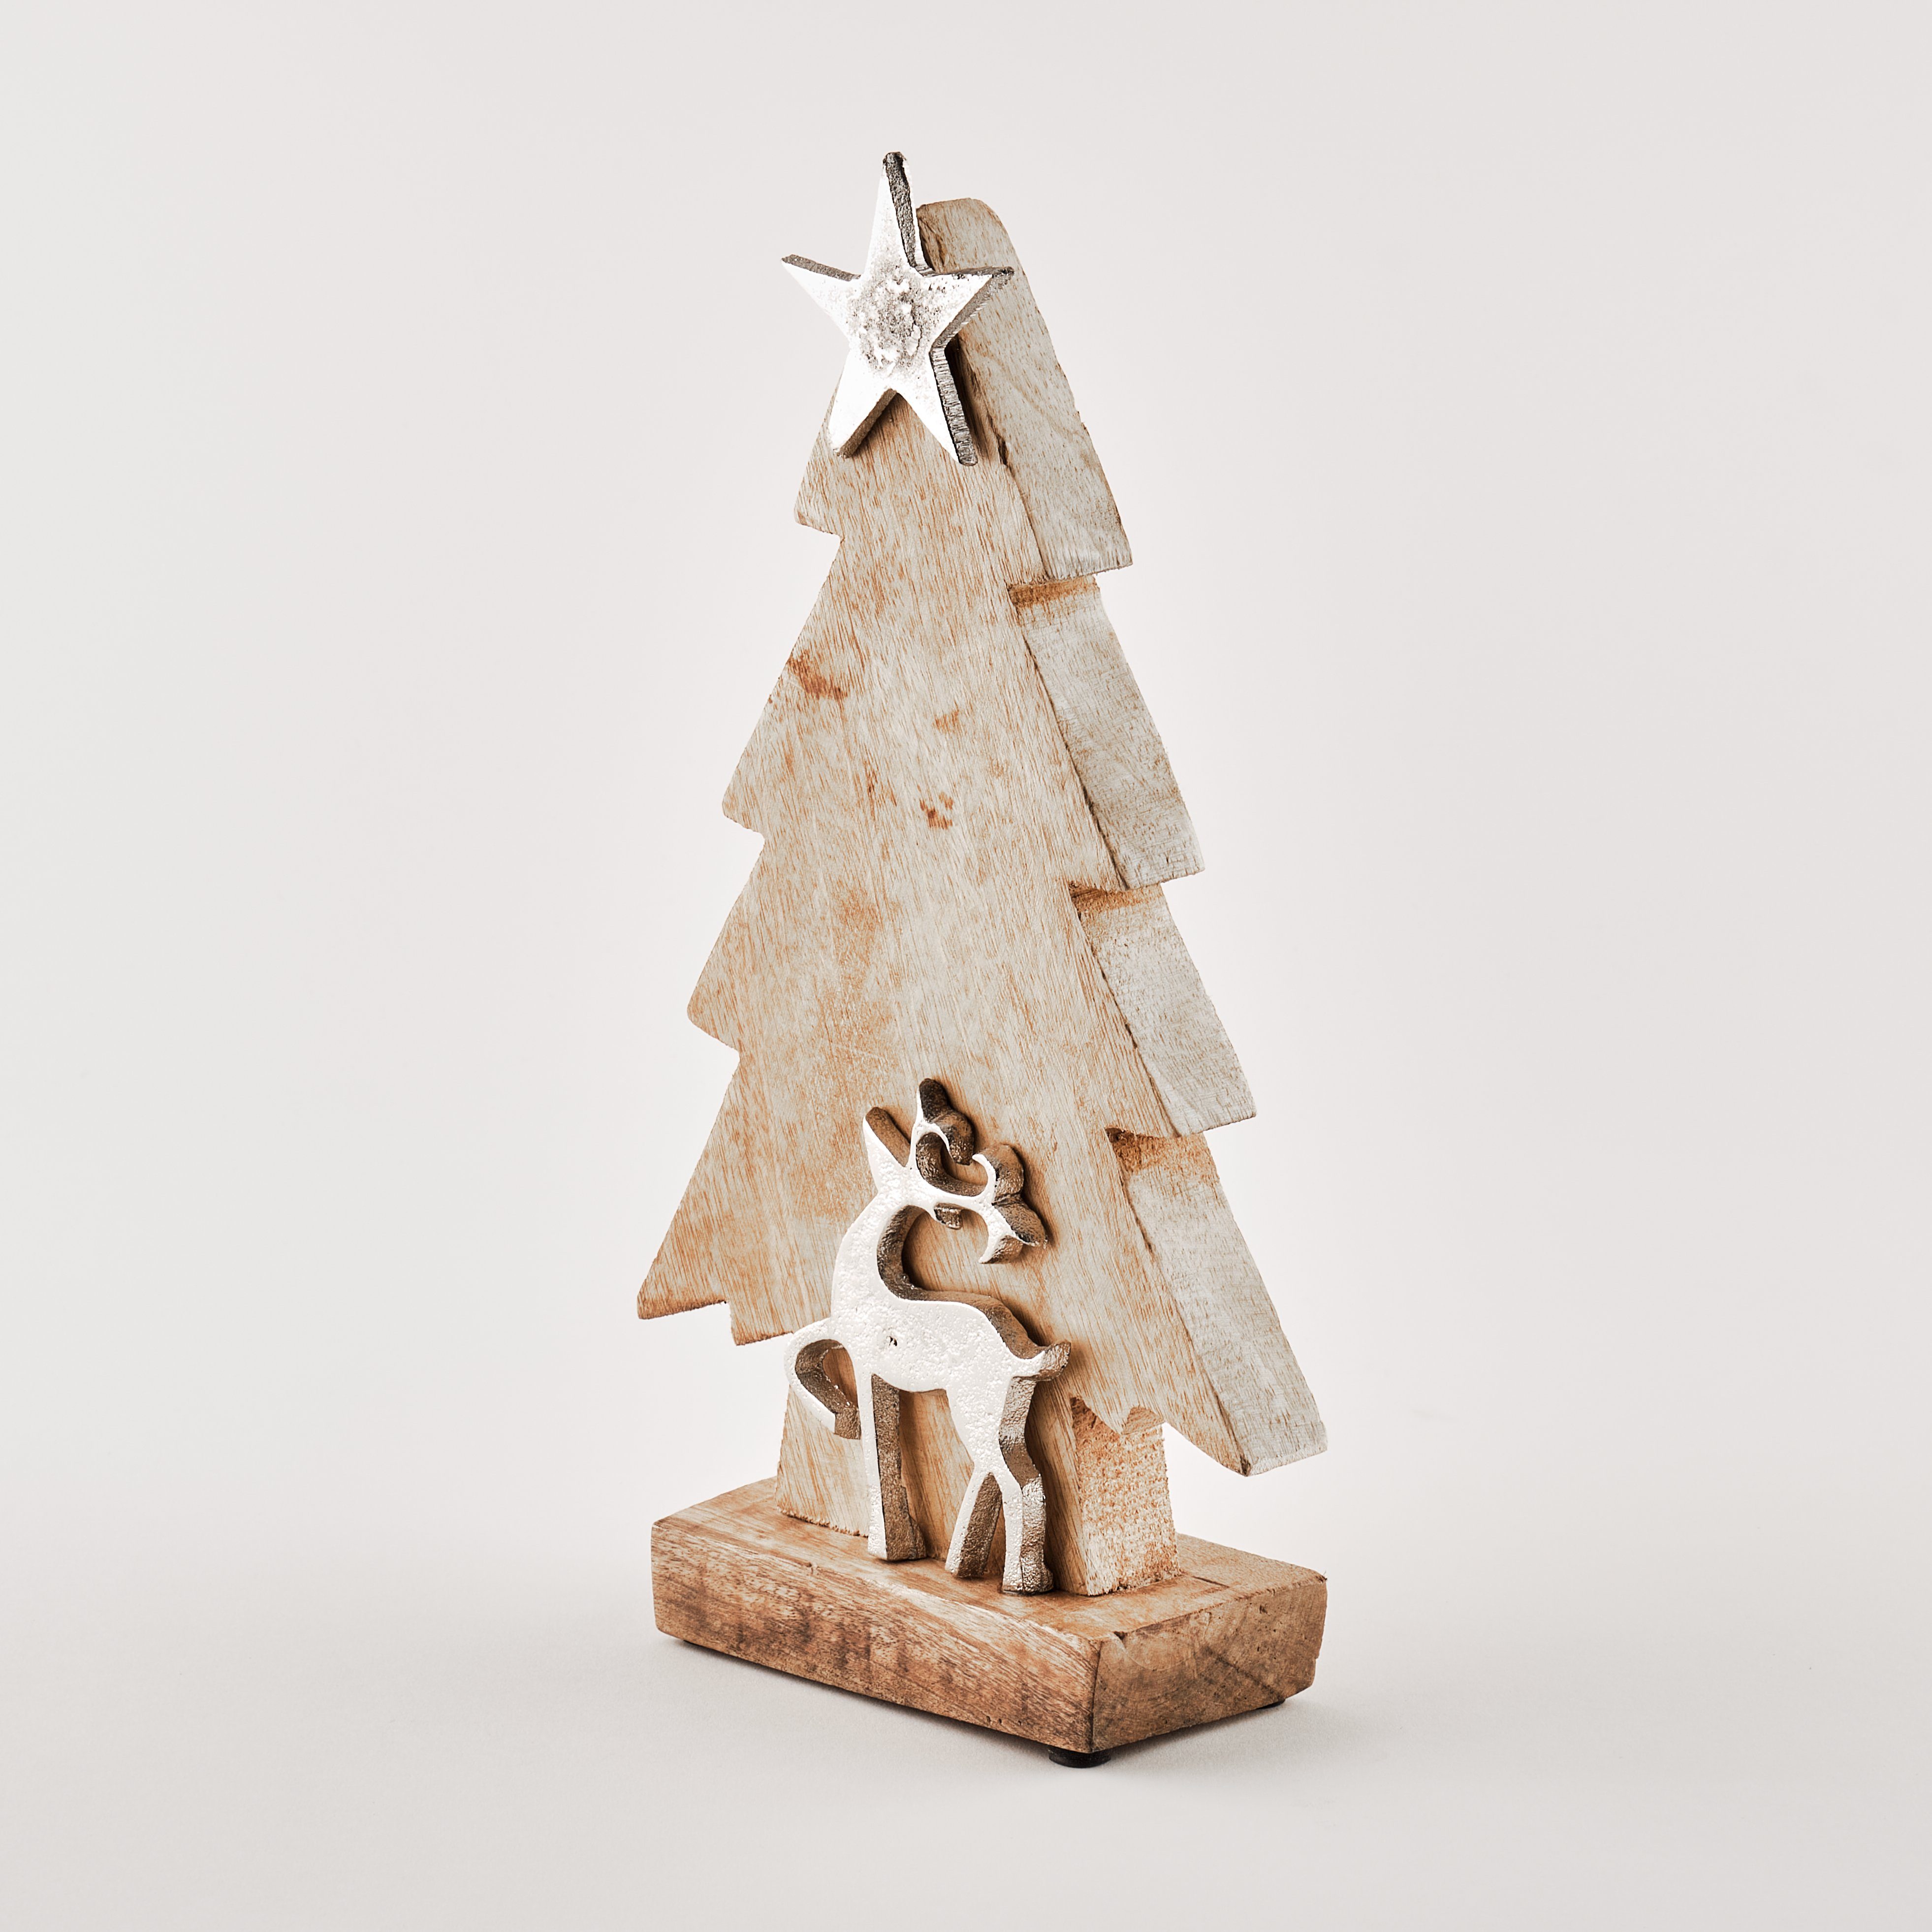 TOPCENT Weihnachtsfigur Tannenbaum aus Mangoholz mit Rentier und Stern, H 32 cm, aus Mangoholz